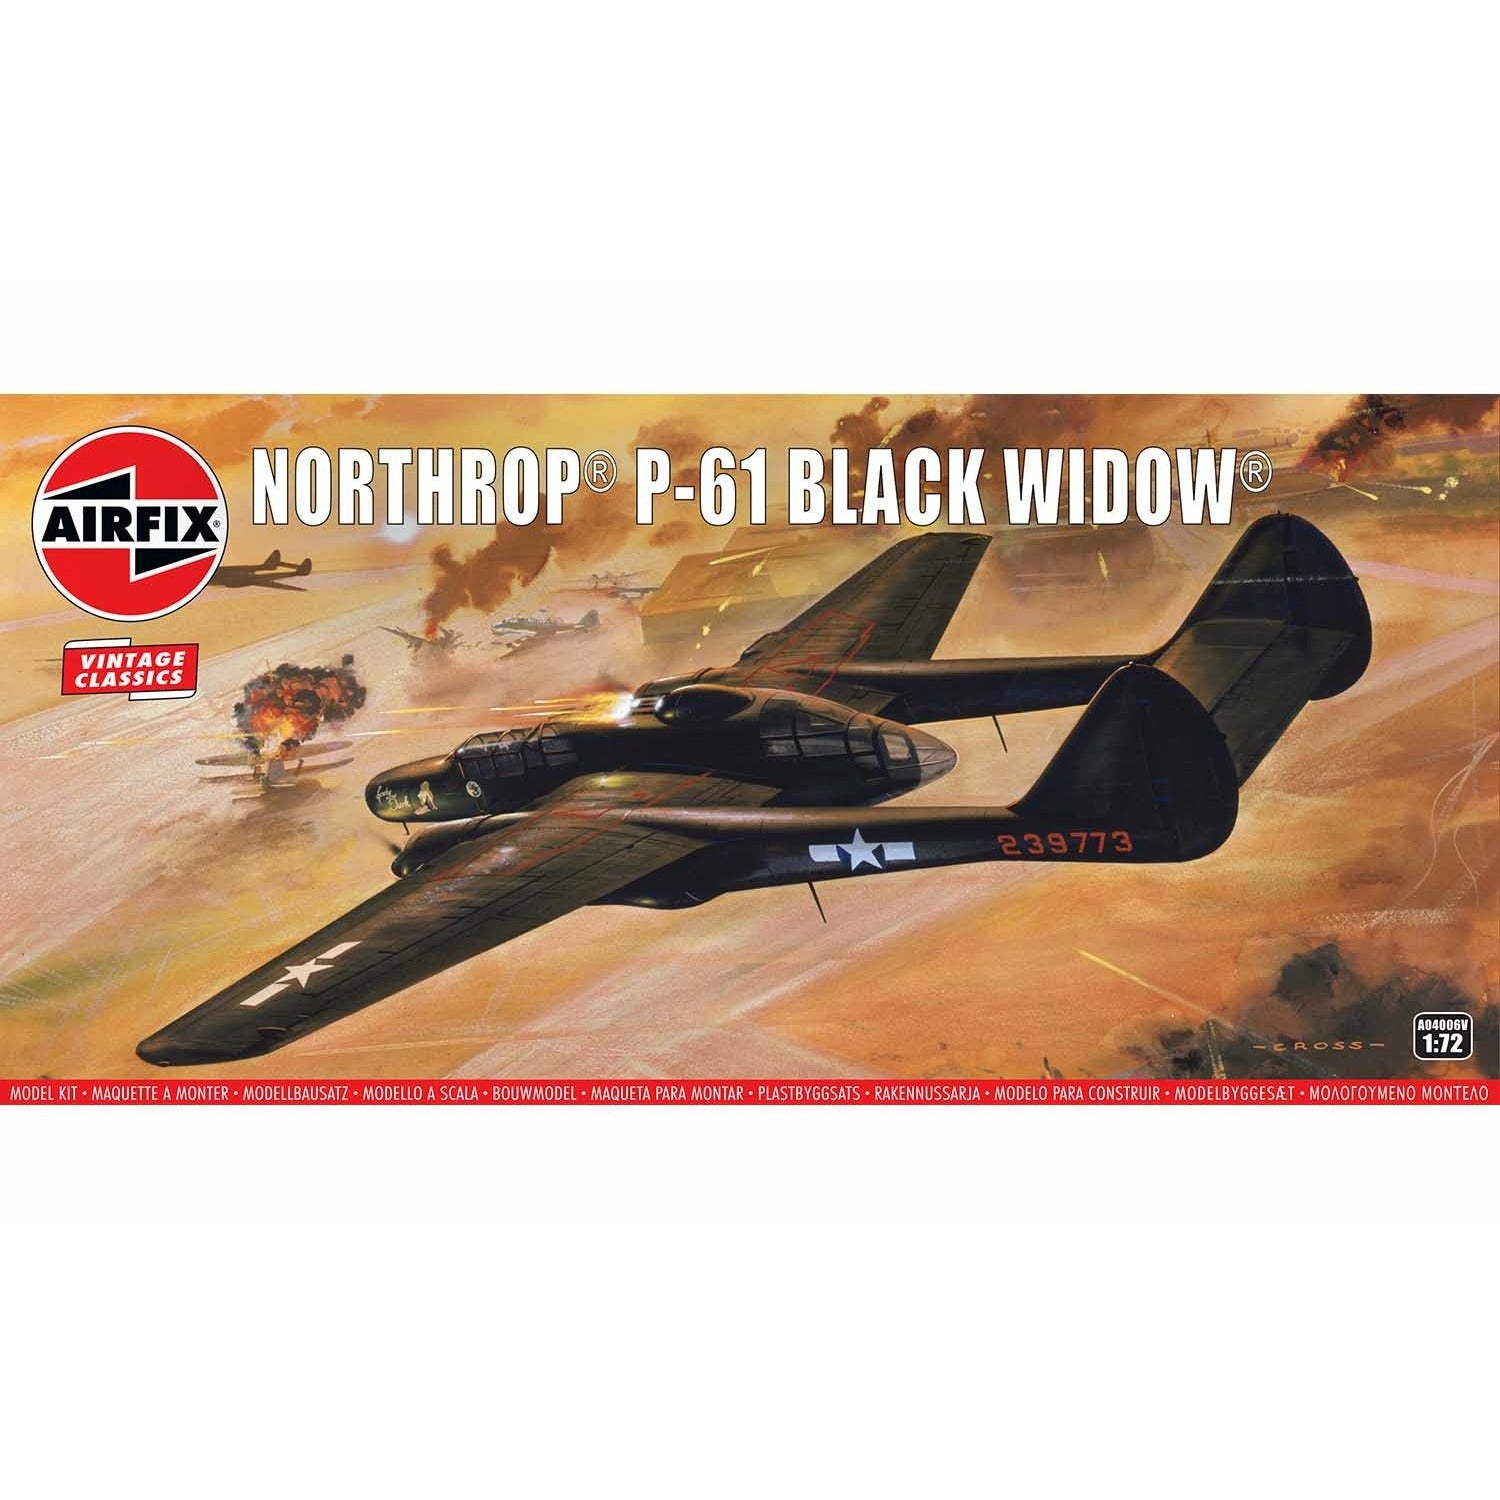 Northrop P-61 Black Widow 1/72 #04006 by Airfix